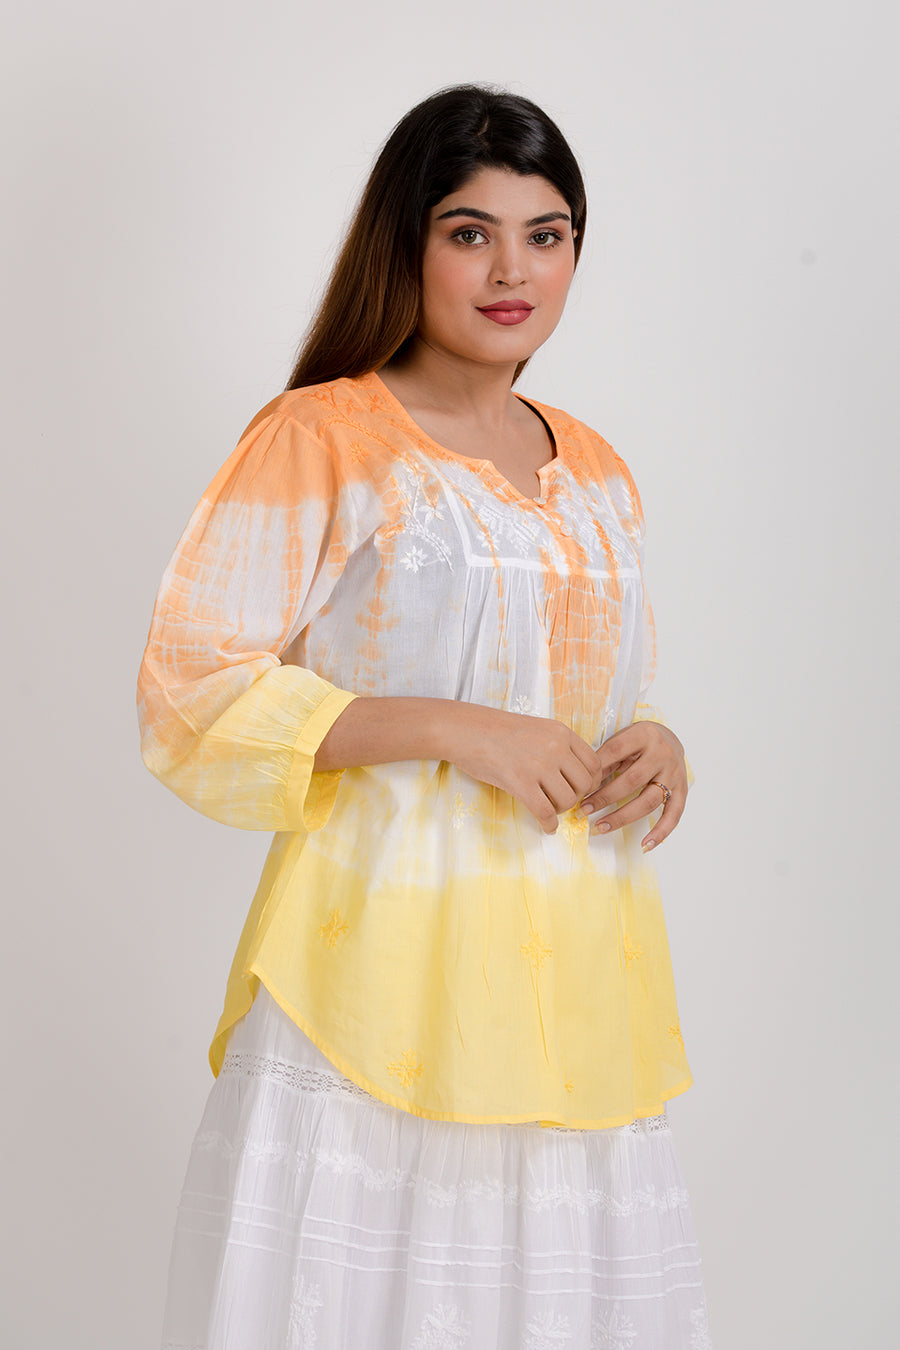 Lucknow Chikan Emporium White With Tie Dye Yellow & Orange Short Chikan Kurti